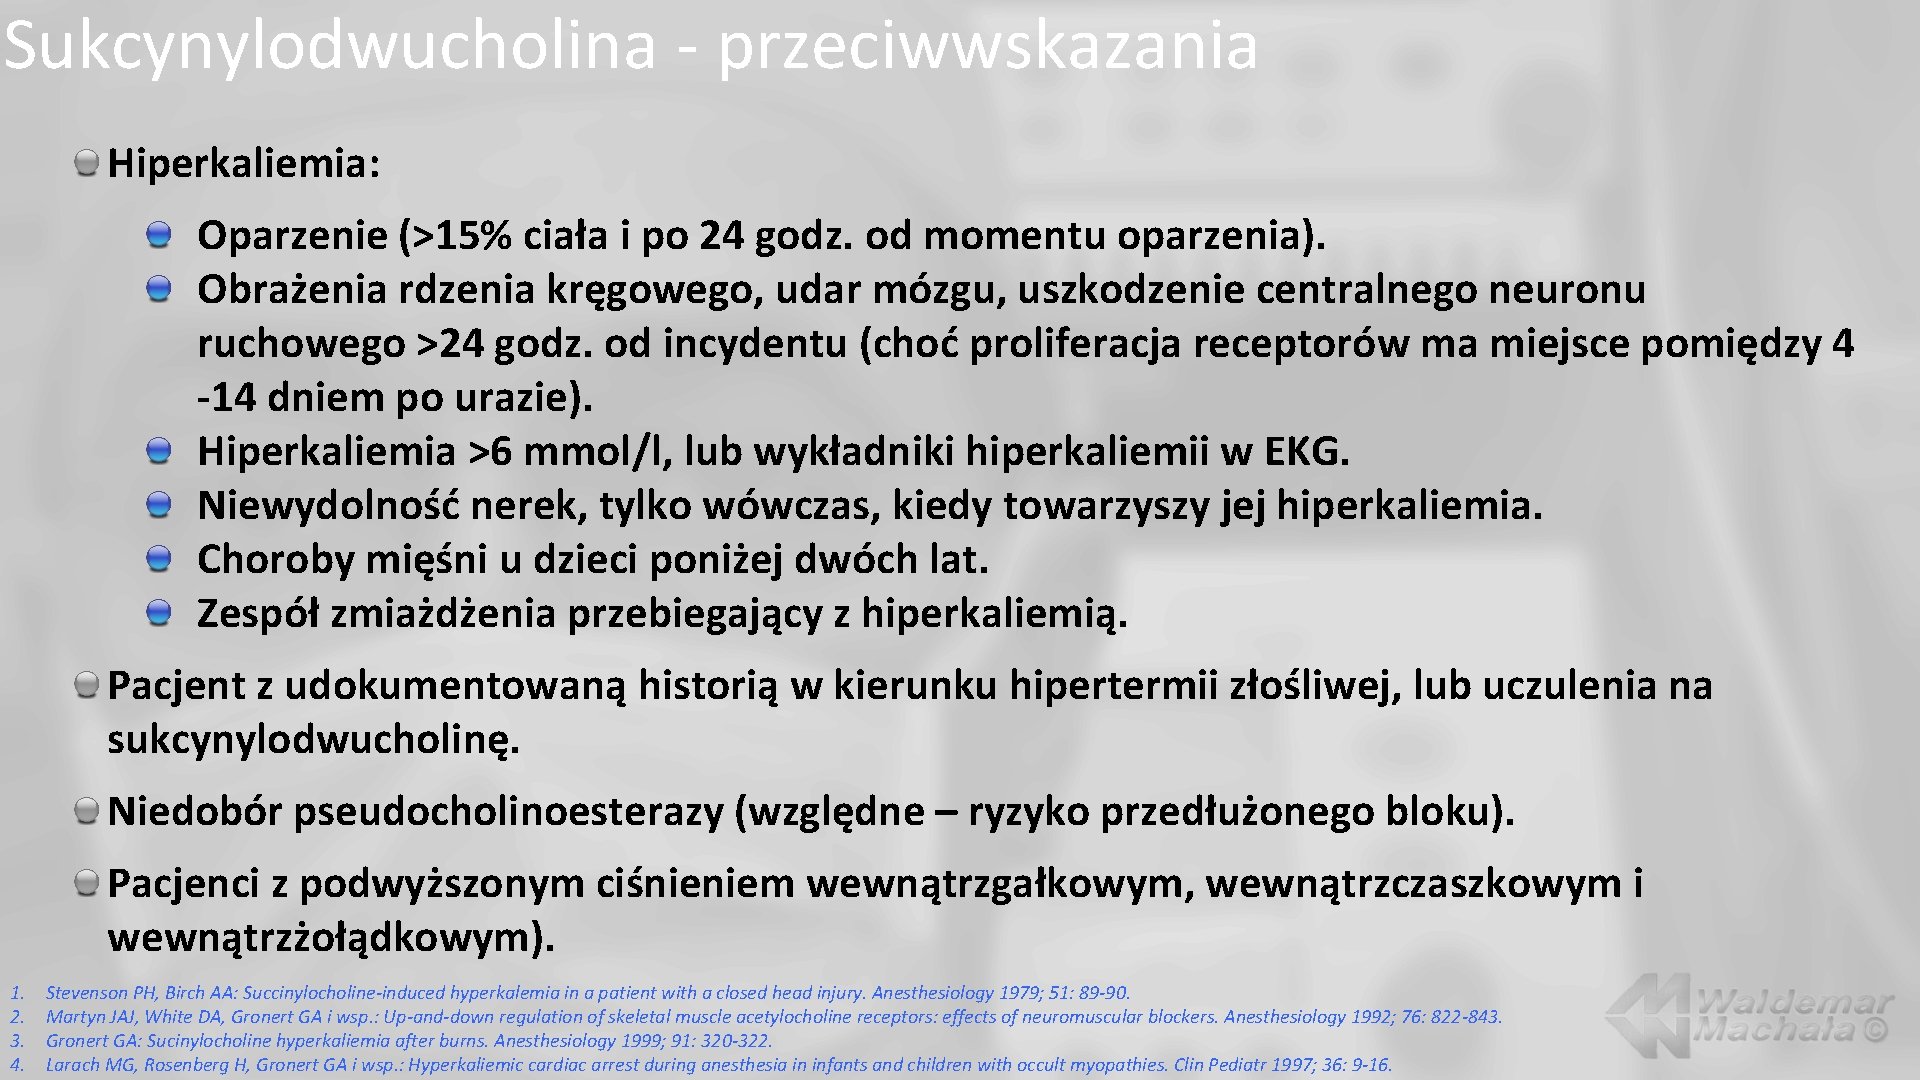 Sukcynylodwucholina - przeciwwskazania Hiperkaliemia: Oparzenie (>15% ciała i po 24 godz. od momentu oparzenia).